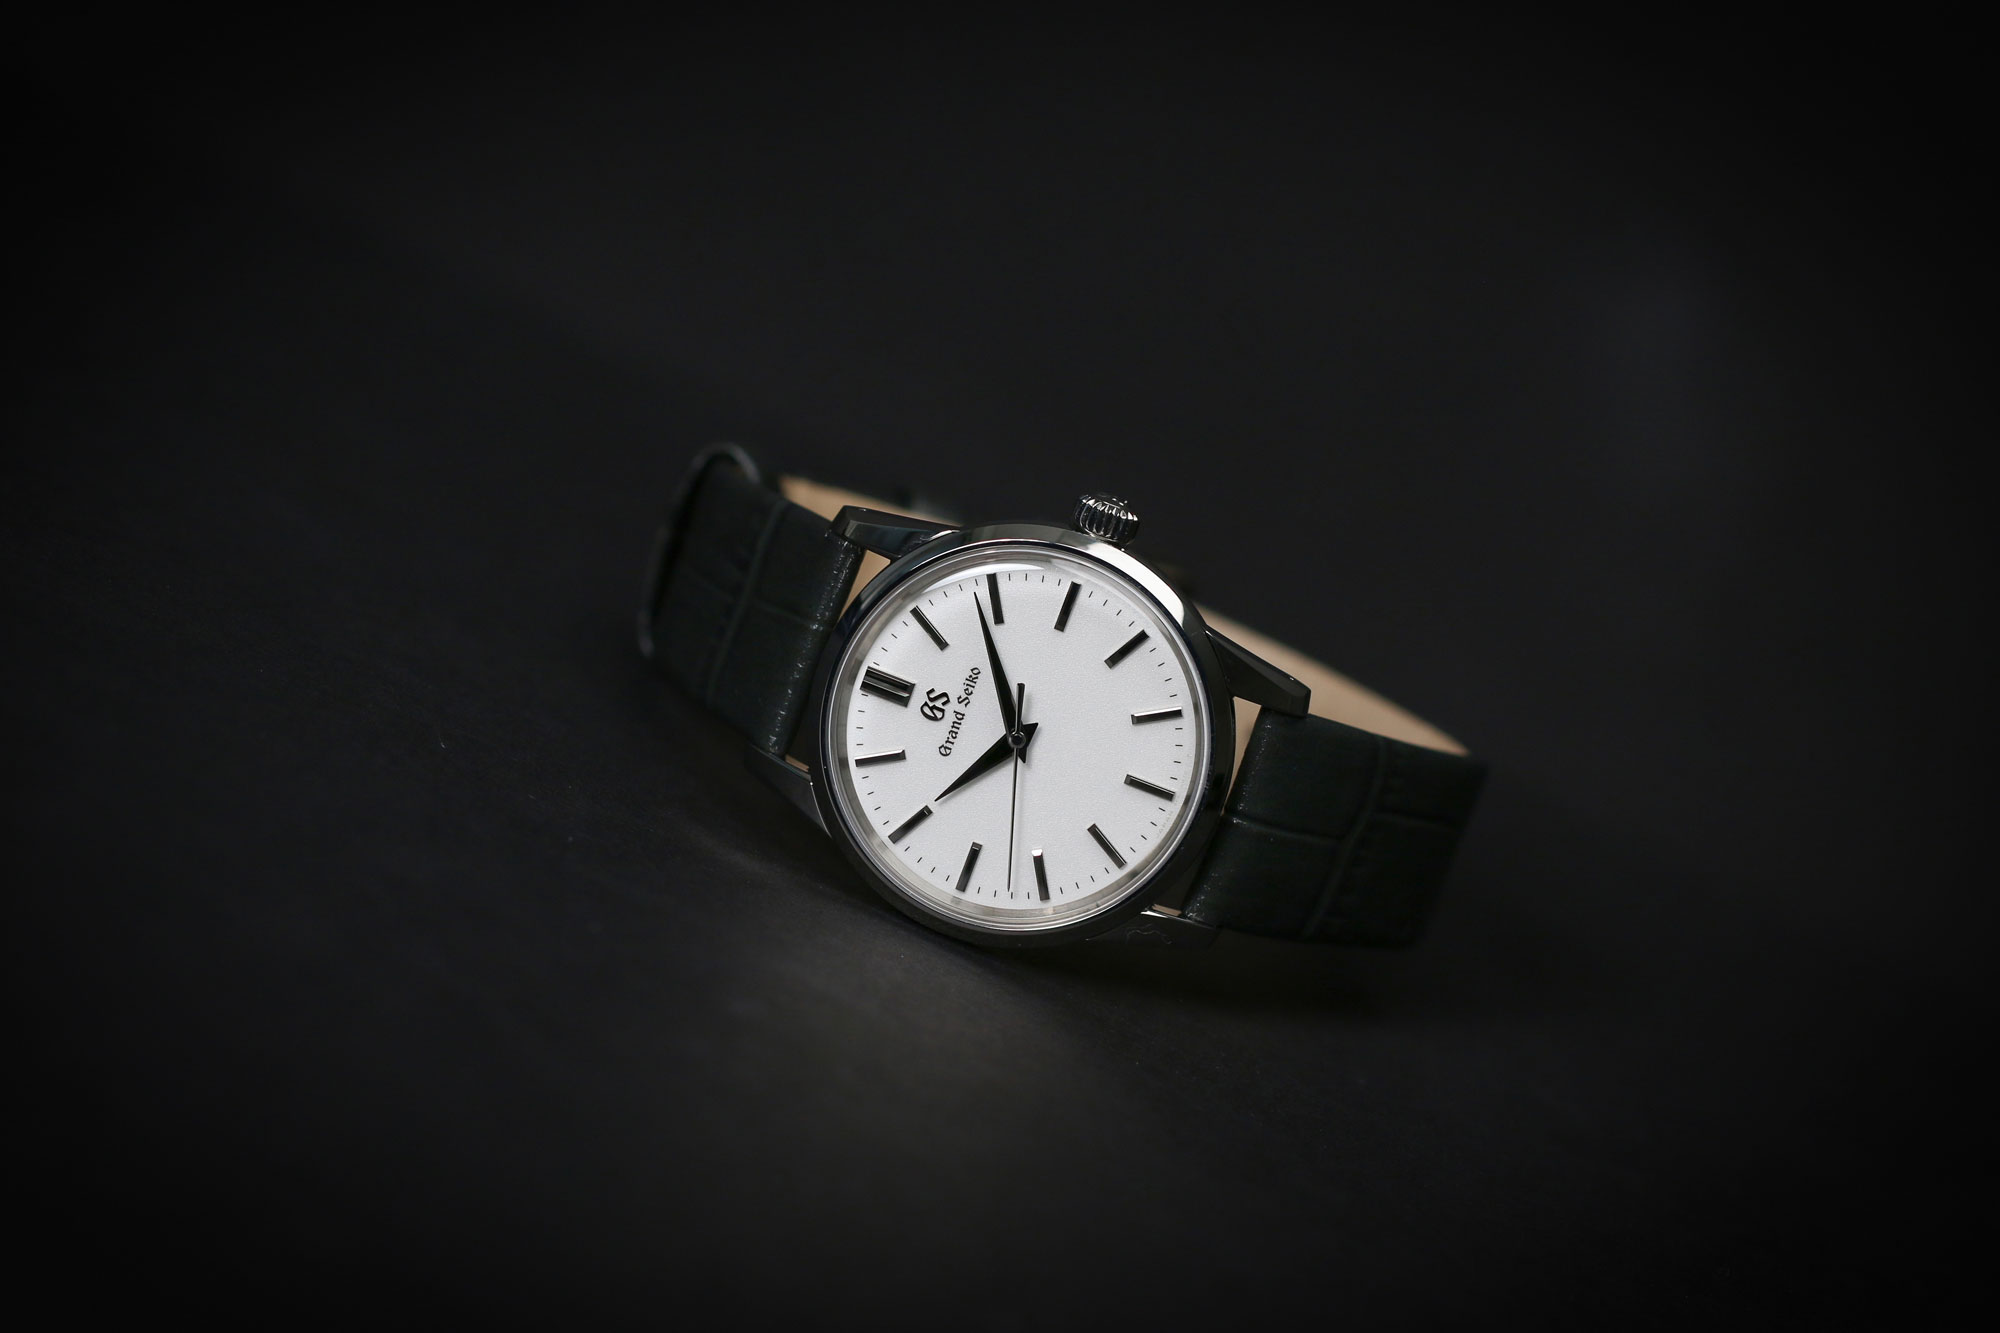 Grand Seiko SBGX347 white dial wristwatch for men and women.